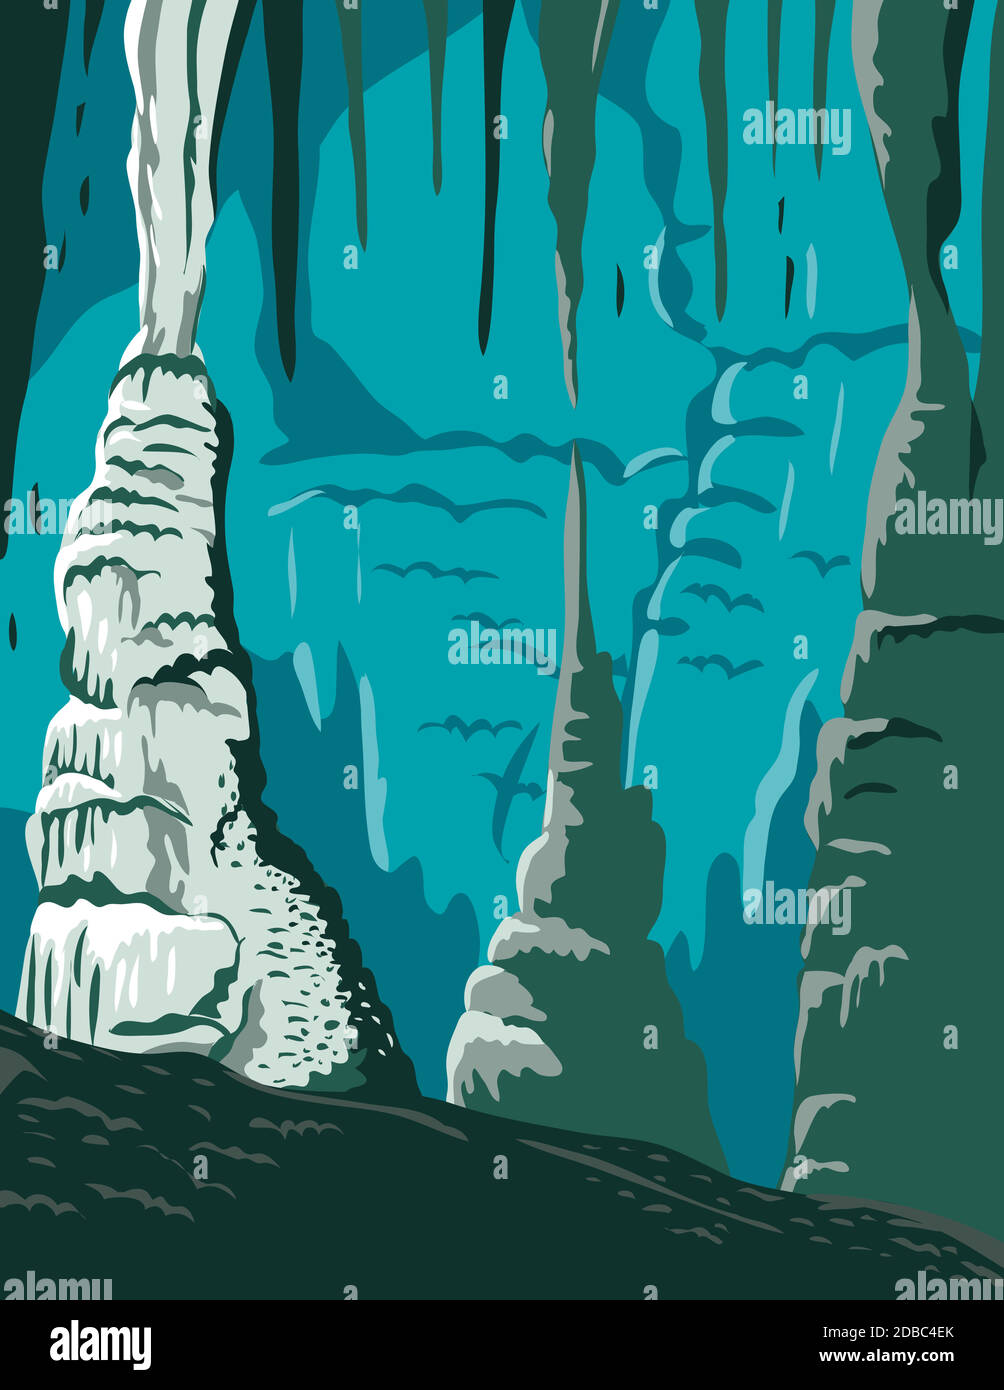 Affiche WPA du parc national de Carlsbad Caverns, une grotte d'exposition ou une grotte commerciale dans les montagnes Guadalupe Nouveau-Mexique États-Unis fait en travaux pr Illustration de Vecteur